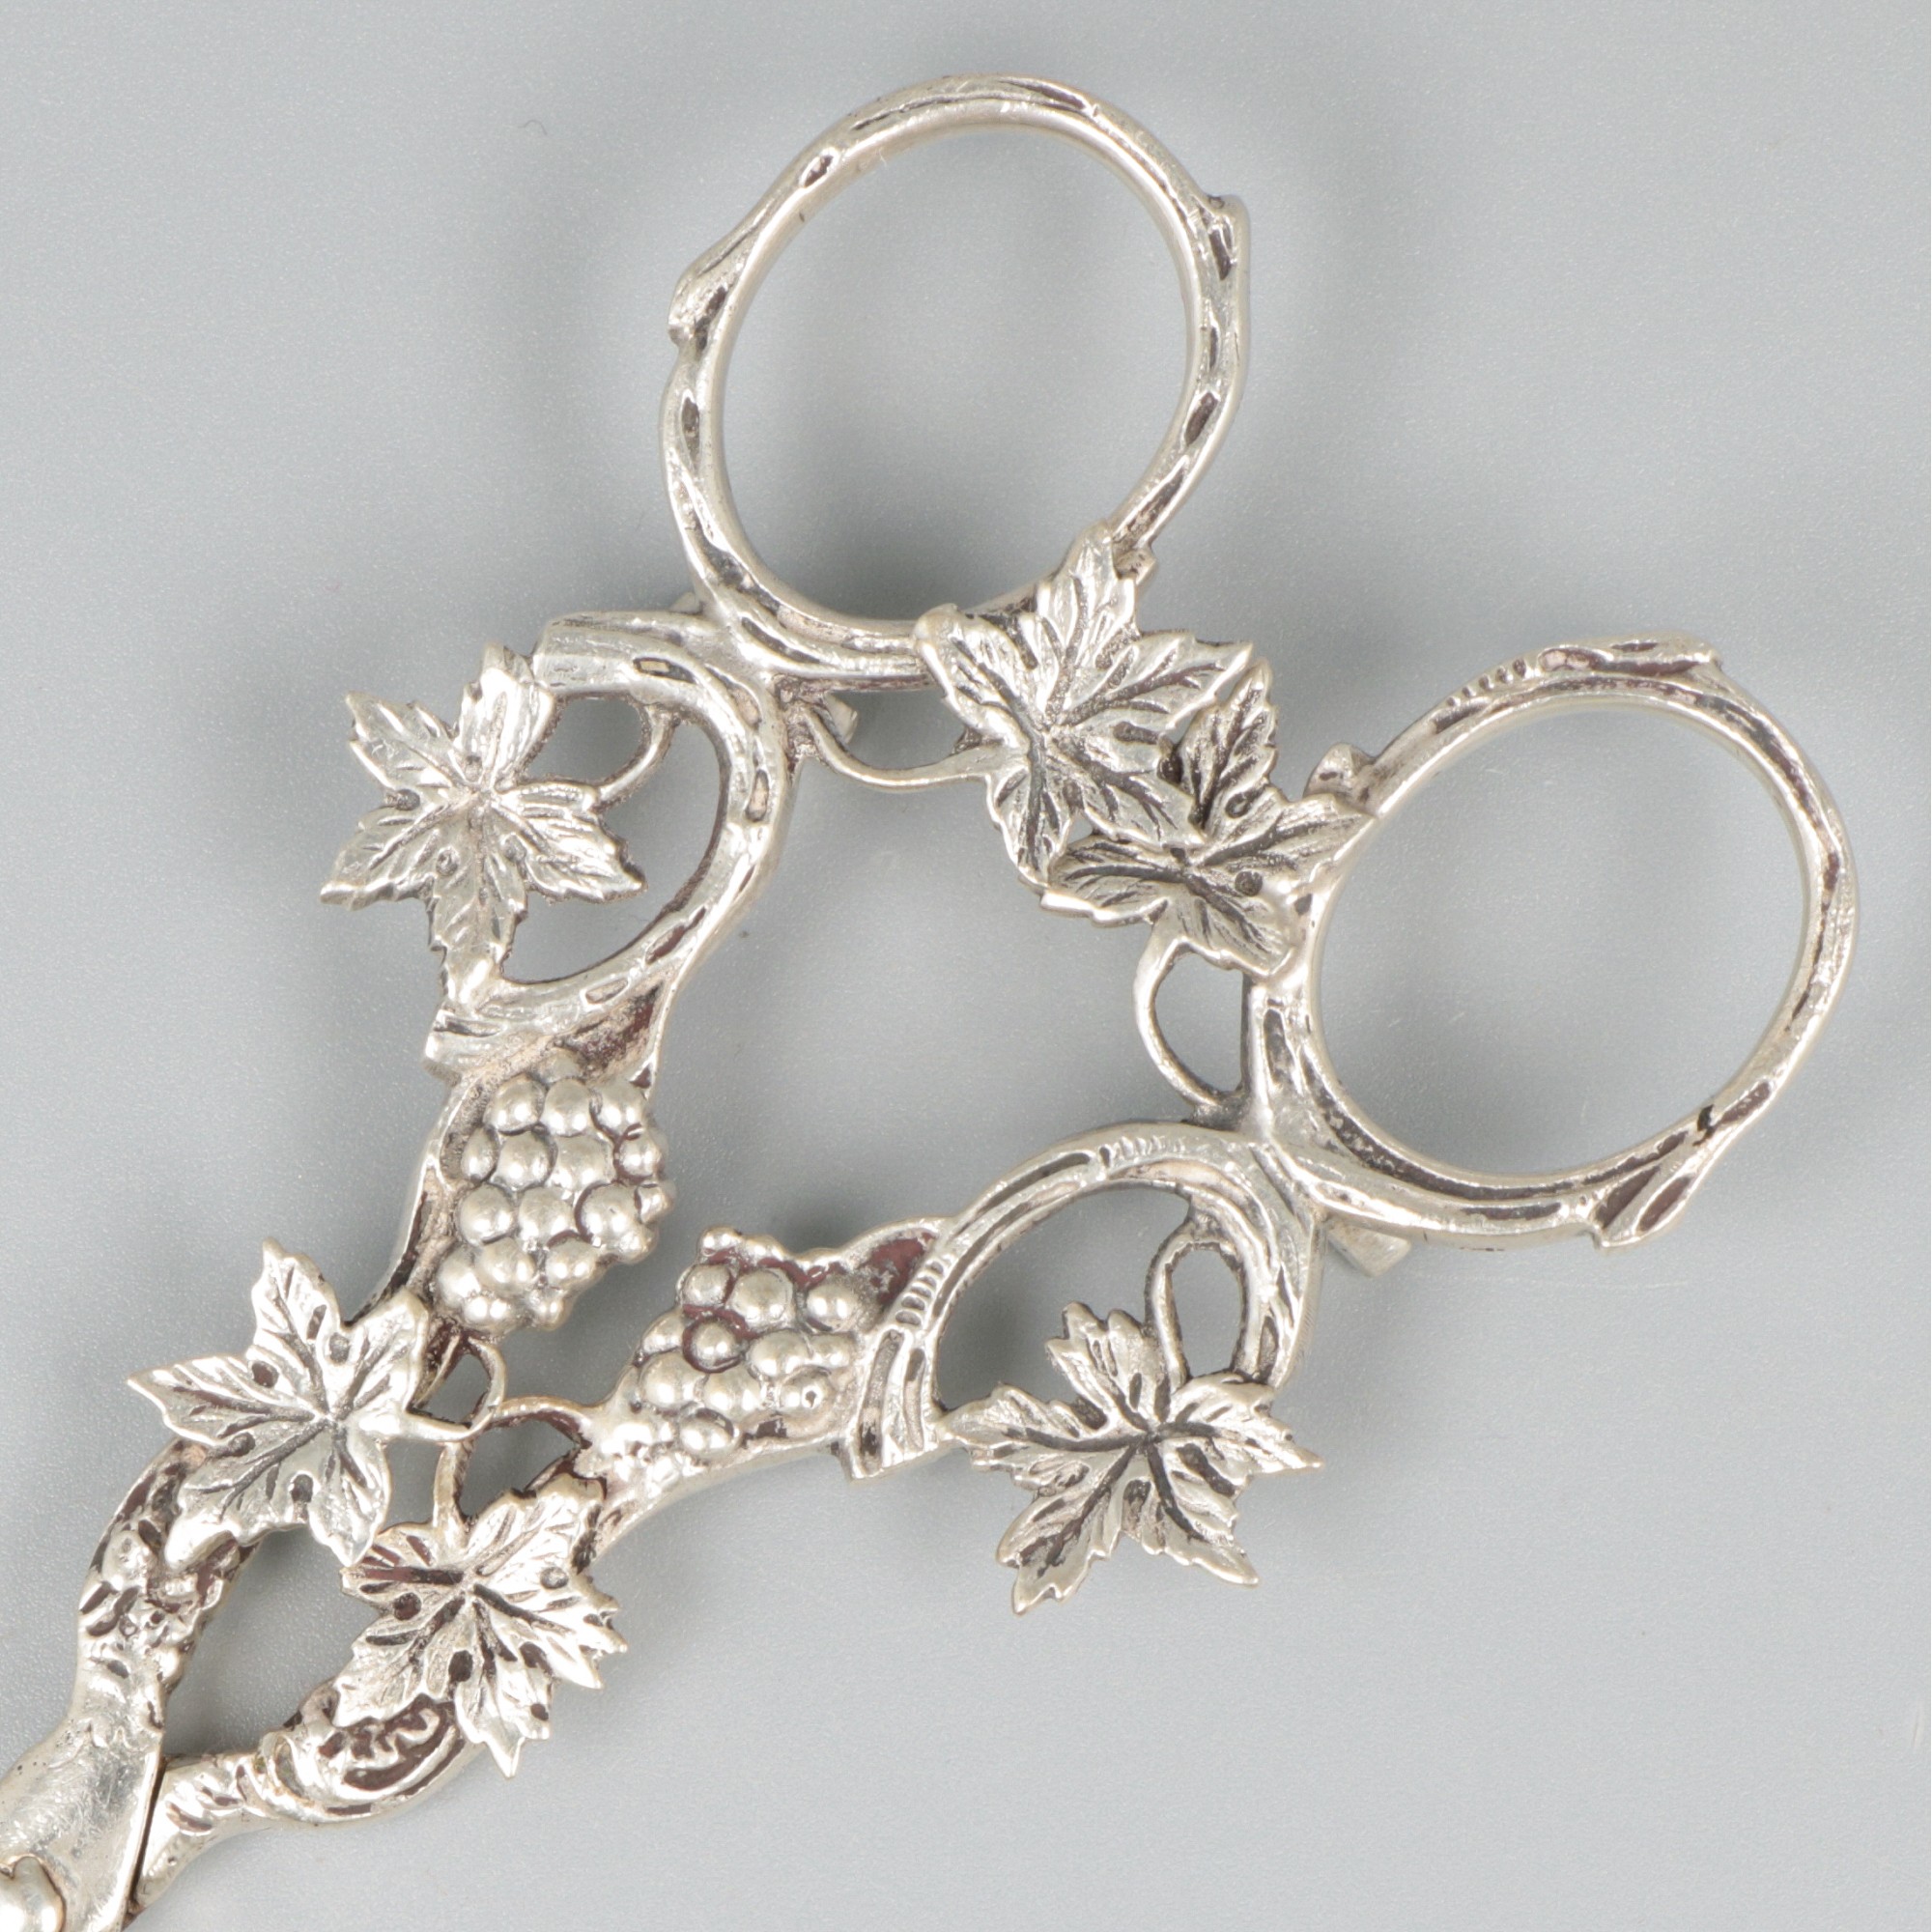 Grape scissors silver. - Image 3 of 8